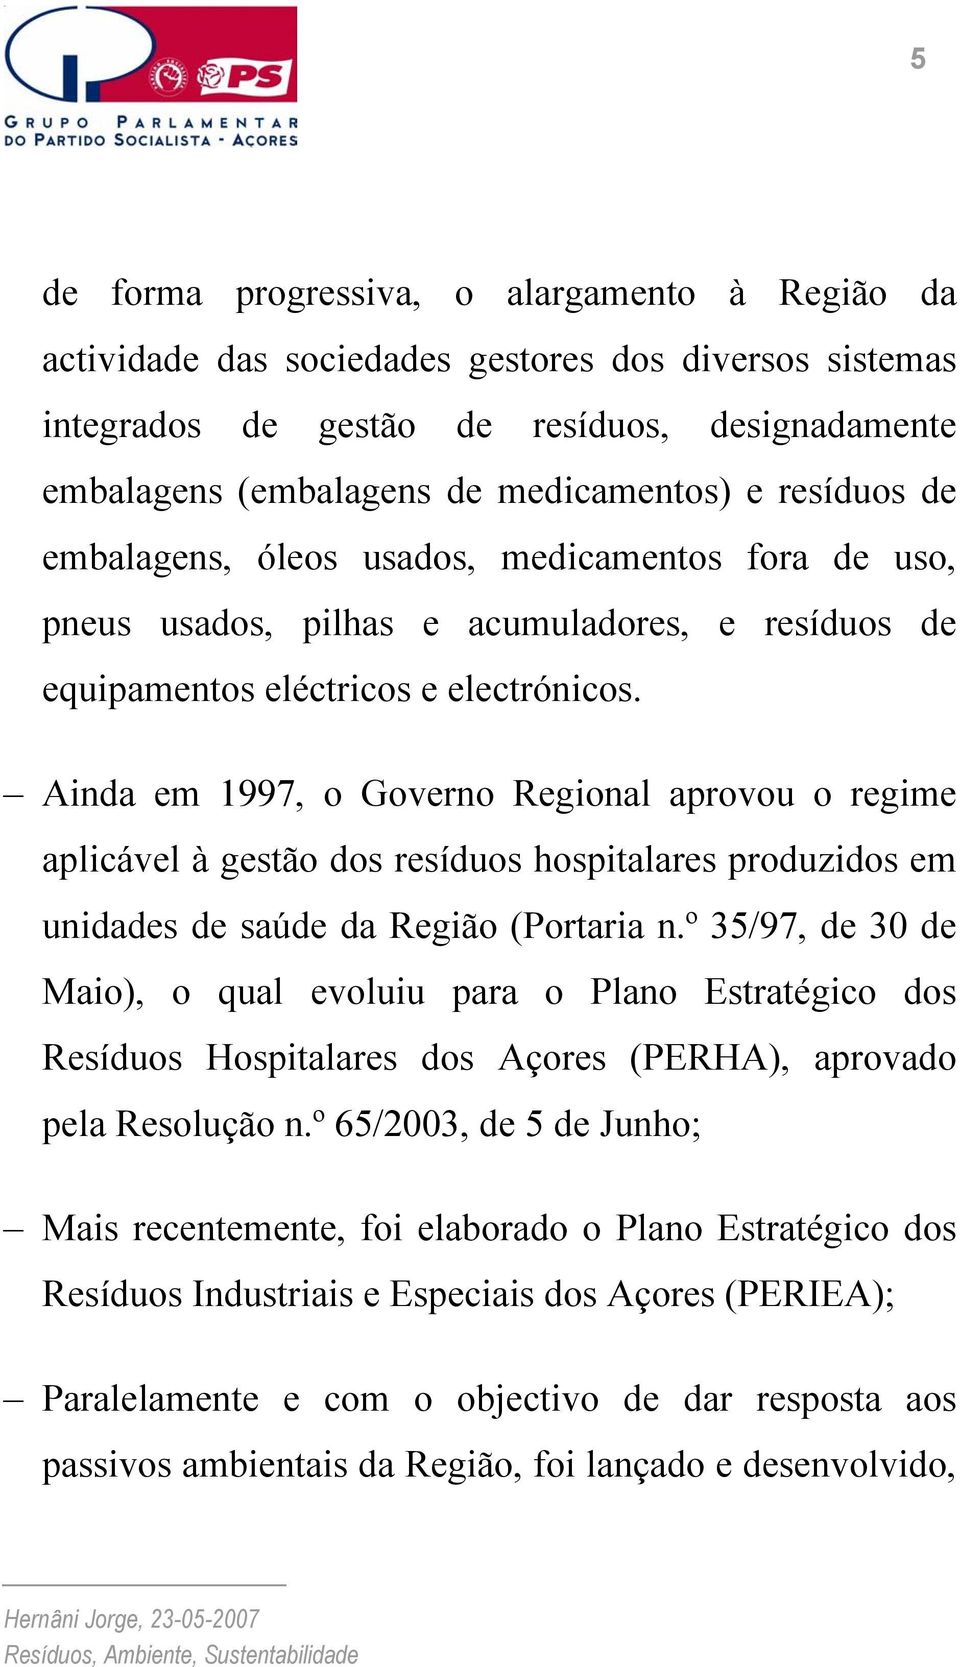 Ainda em 1997, o Governo Regional aprovou o regime aplicável à gestão dos resíduos hospitalares produzidos em unidades de saúde da Região (Portaria n.